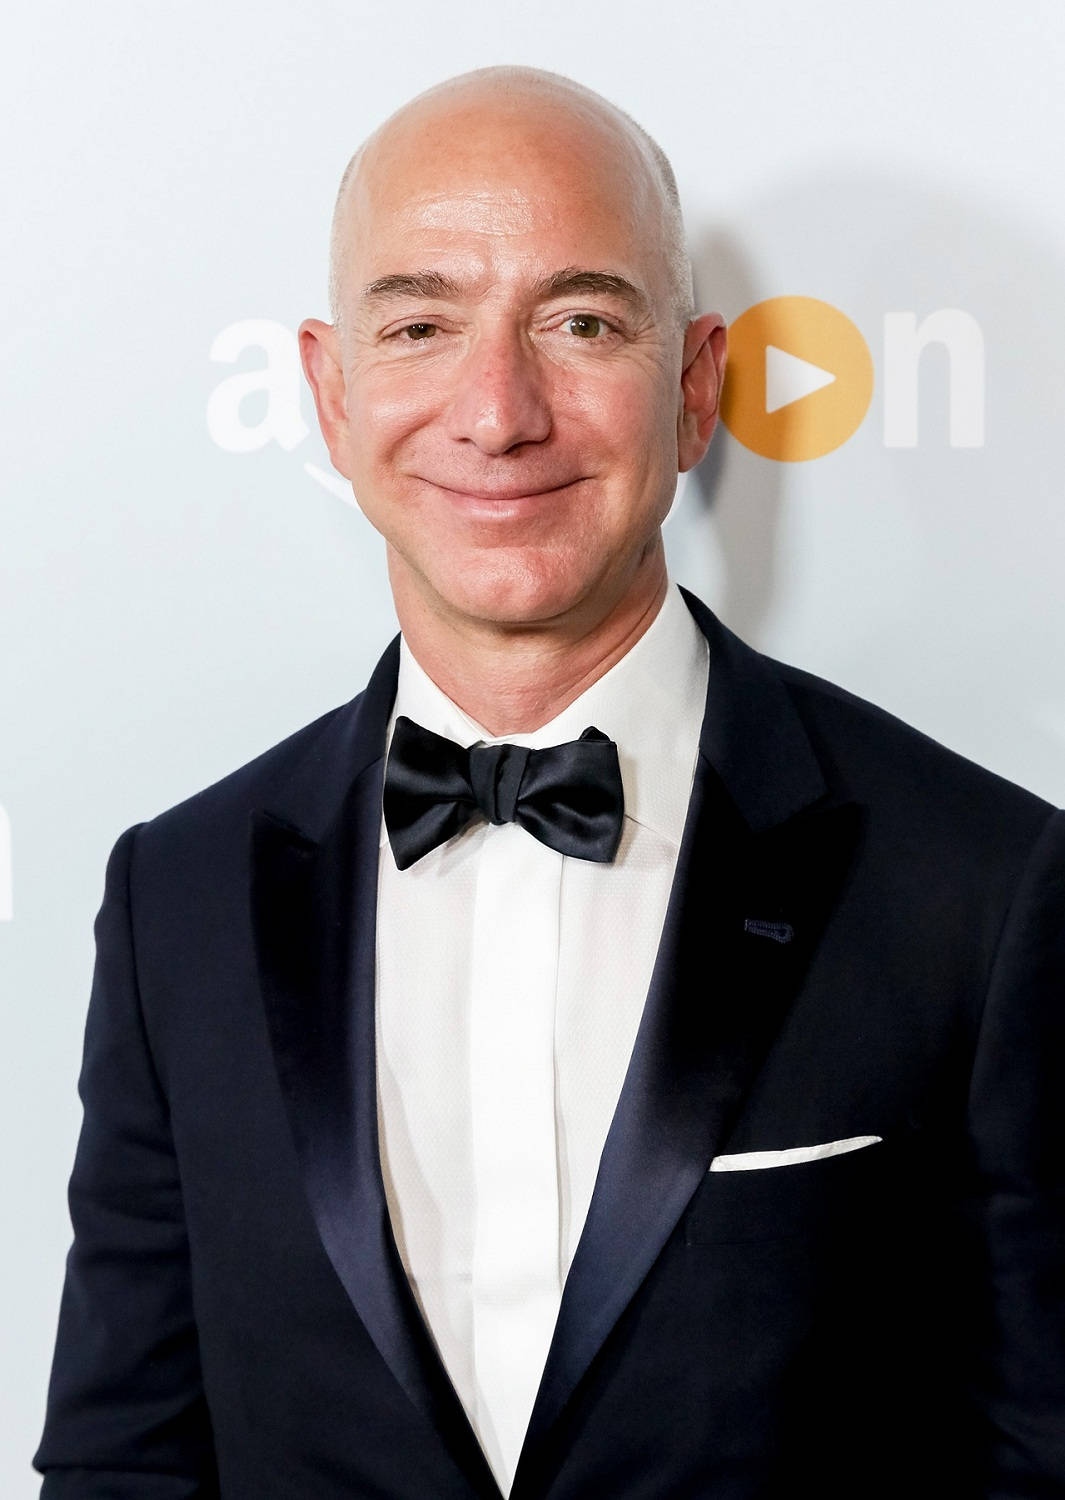 Jeff Bezos Amazon Backdrop Wallpaper